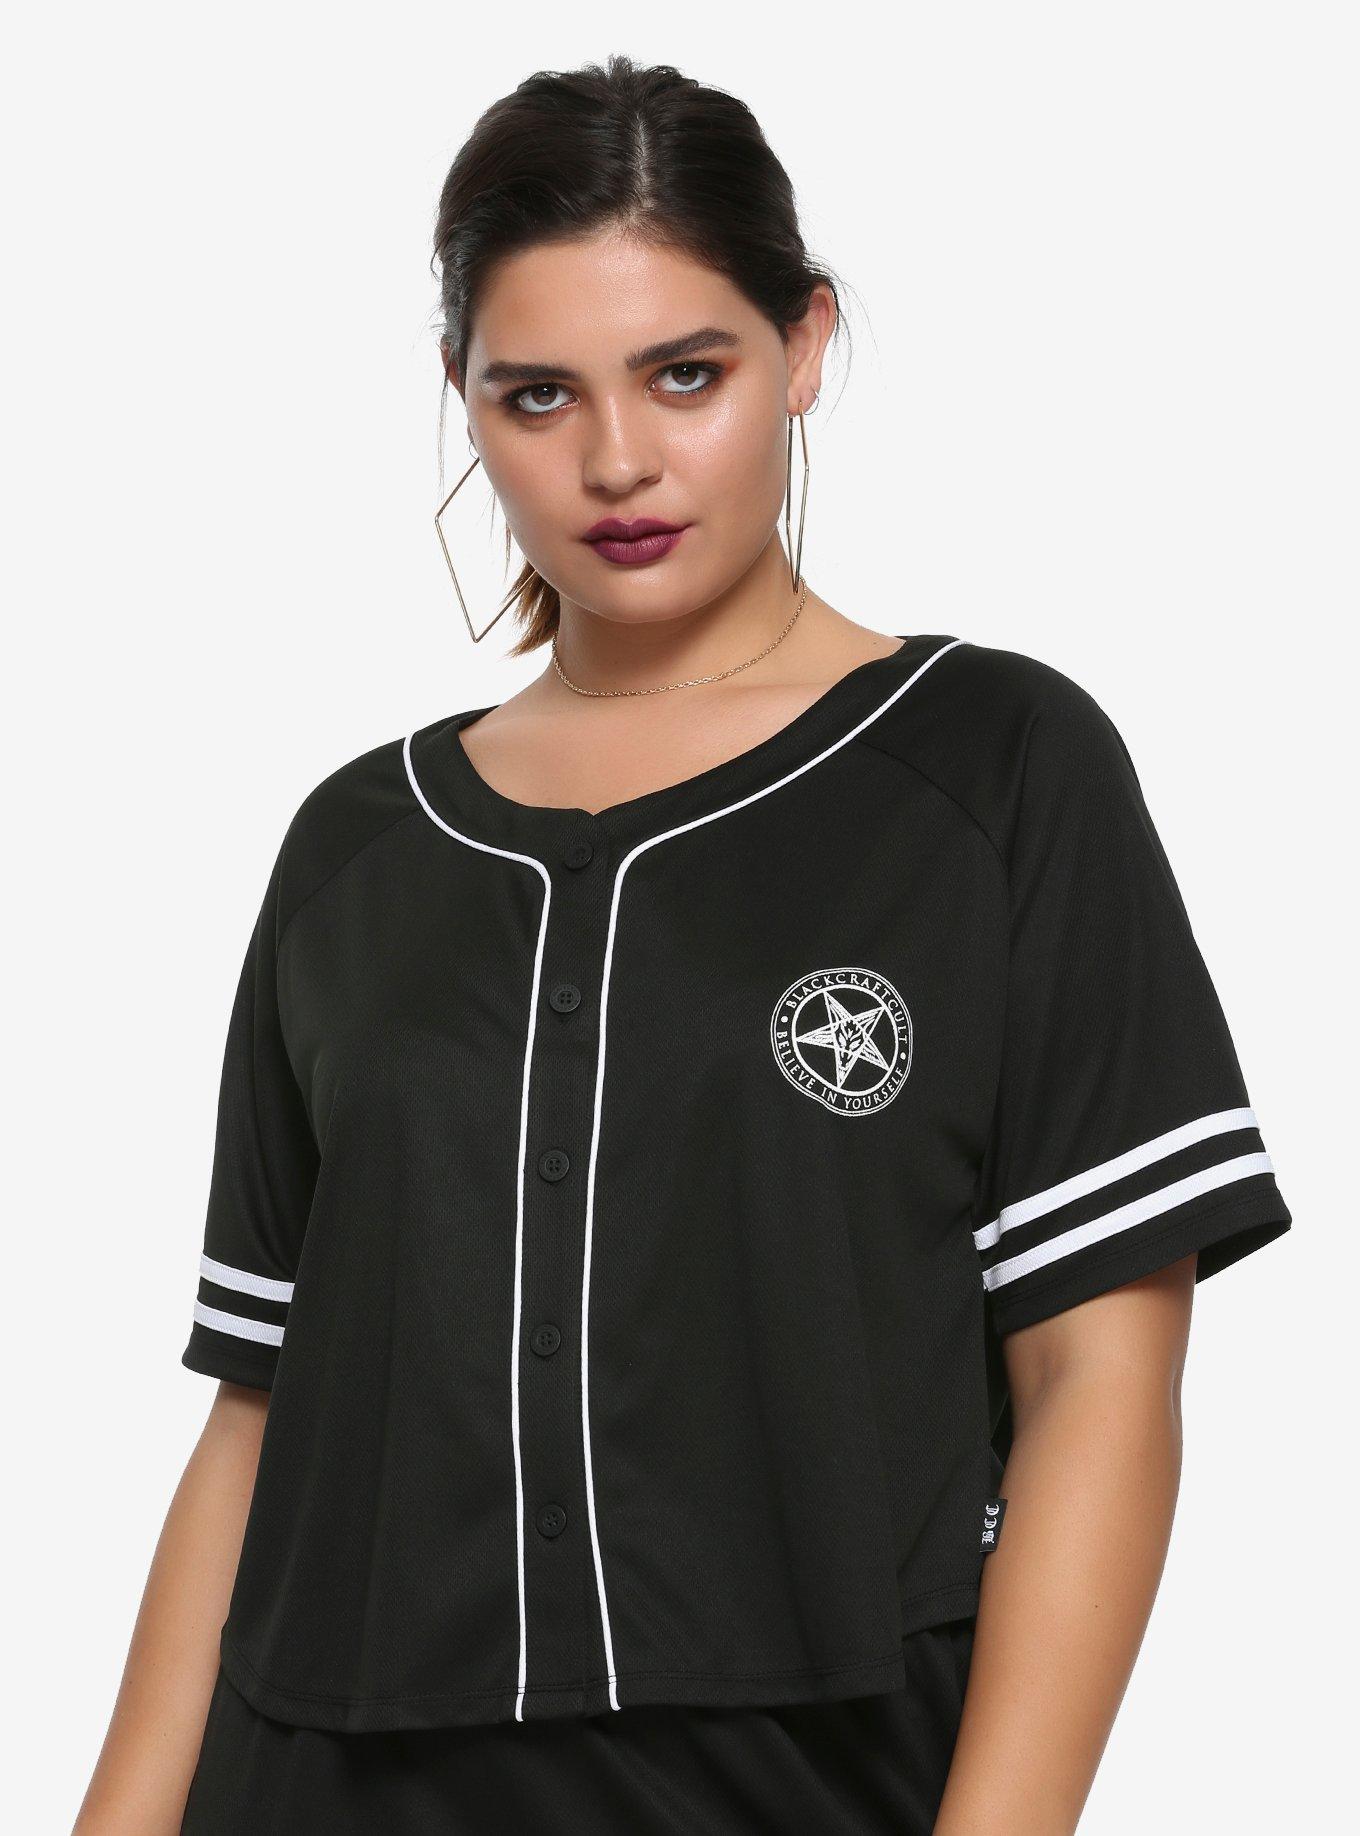 BlackCraft Craft 13 Girls Cropped Baseball Jersey Plus Size, BLACK, hi-res